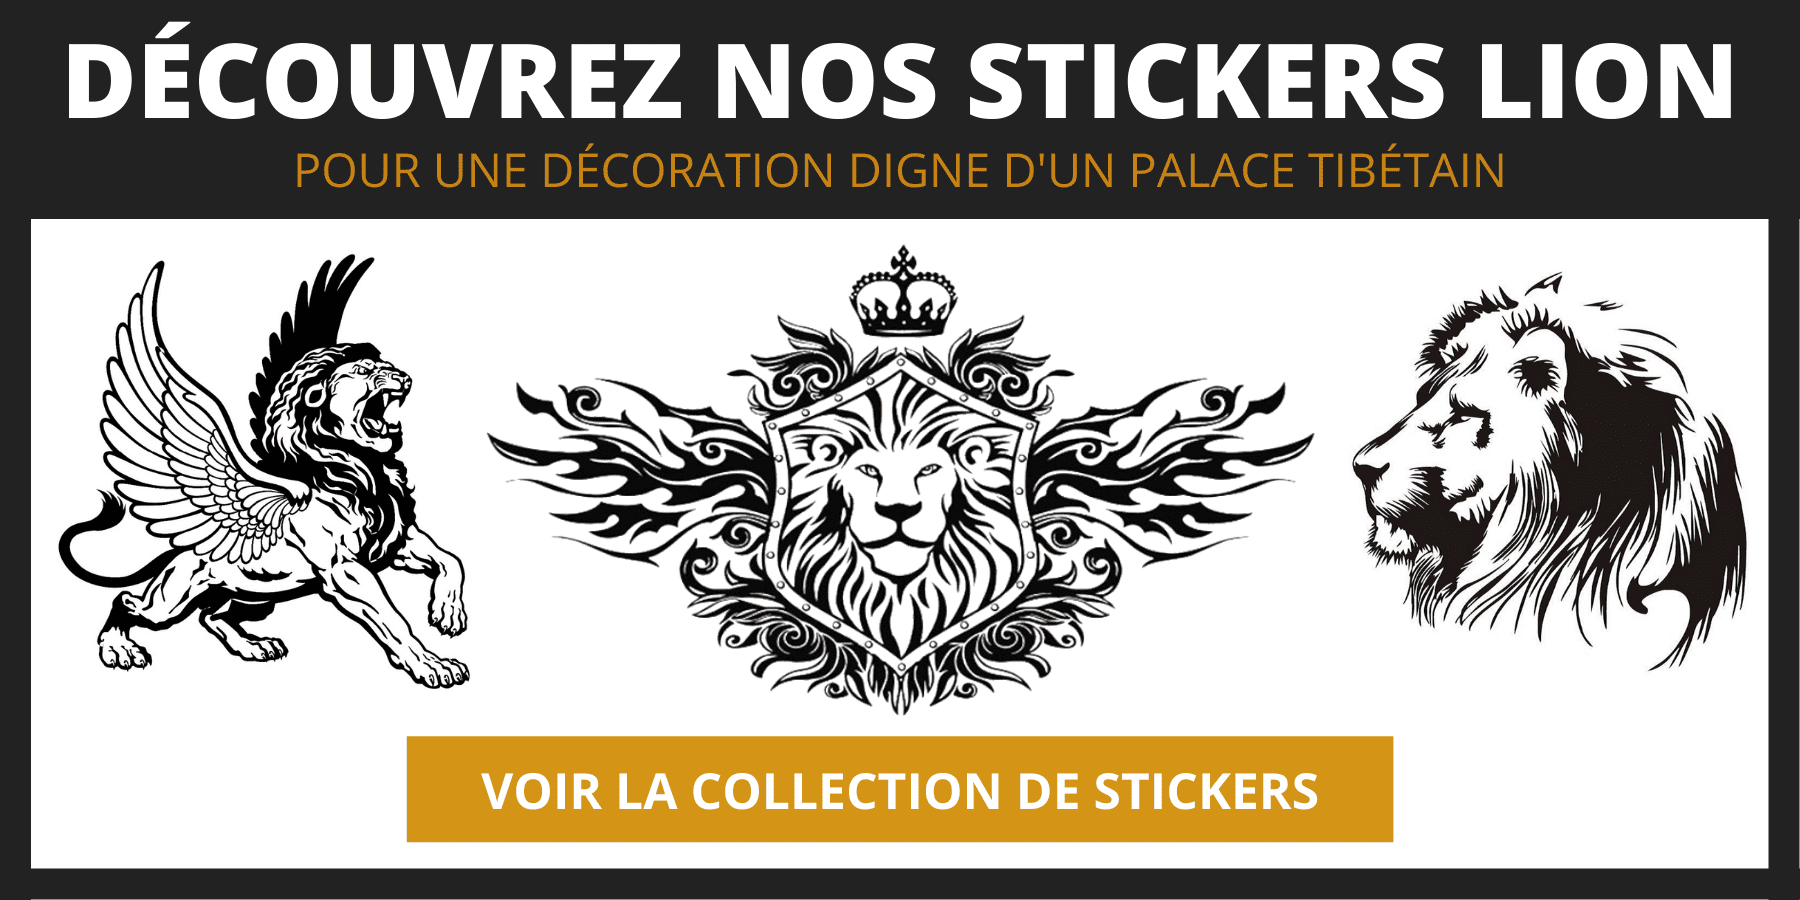 Stickers de lion.